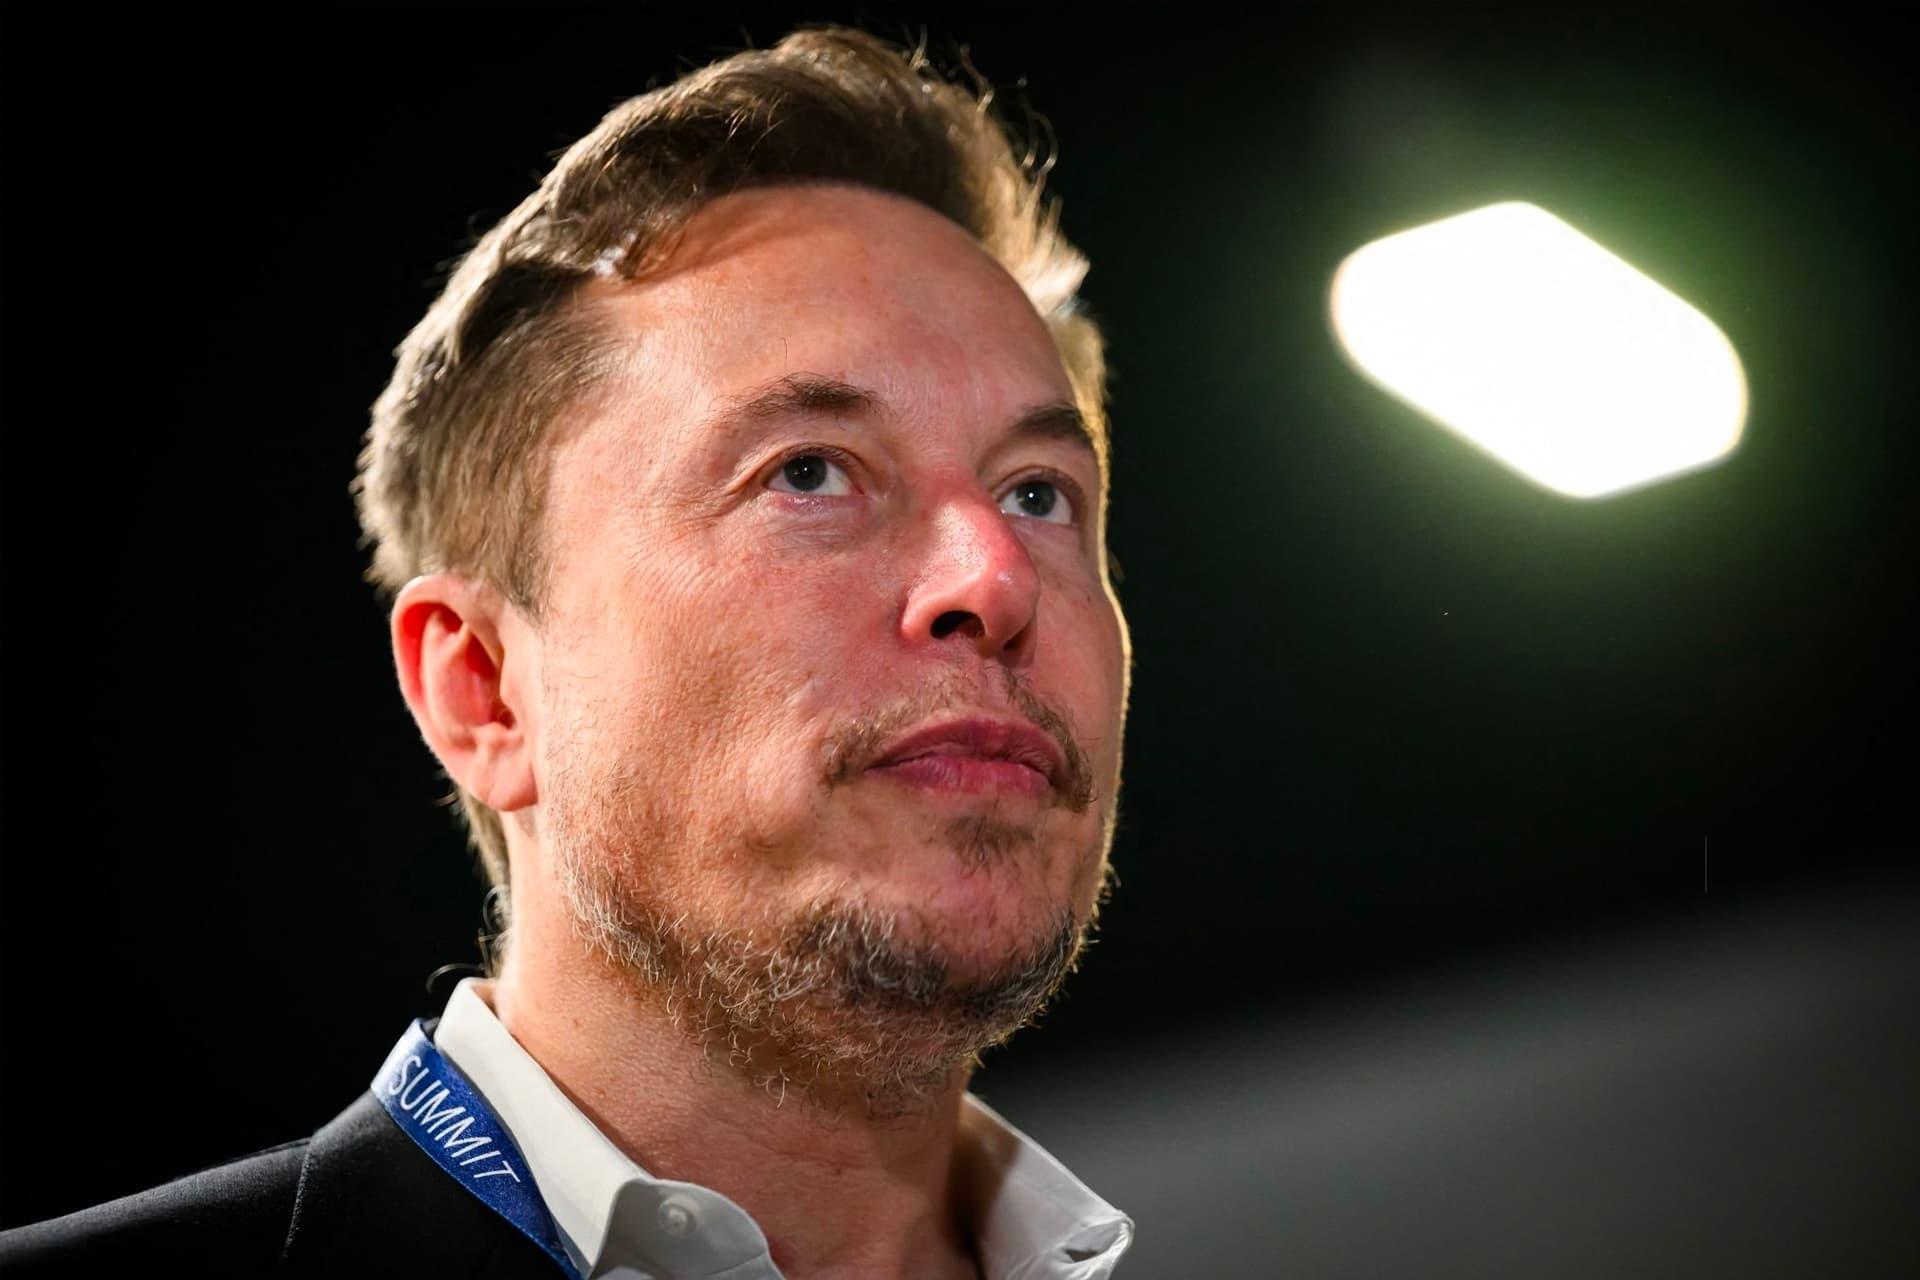 مرجع متخصصين ايران چهره ايلان ماسك / Elon Musk از نماي نزديك چراغ روشن در پشت سر